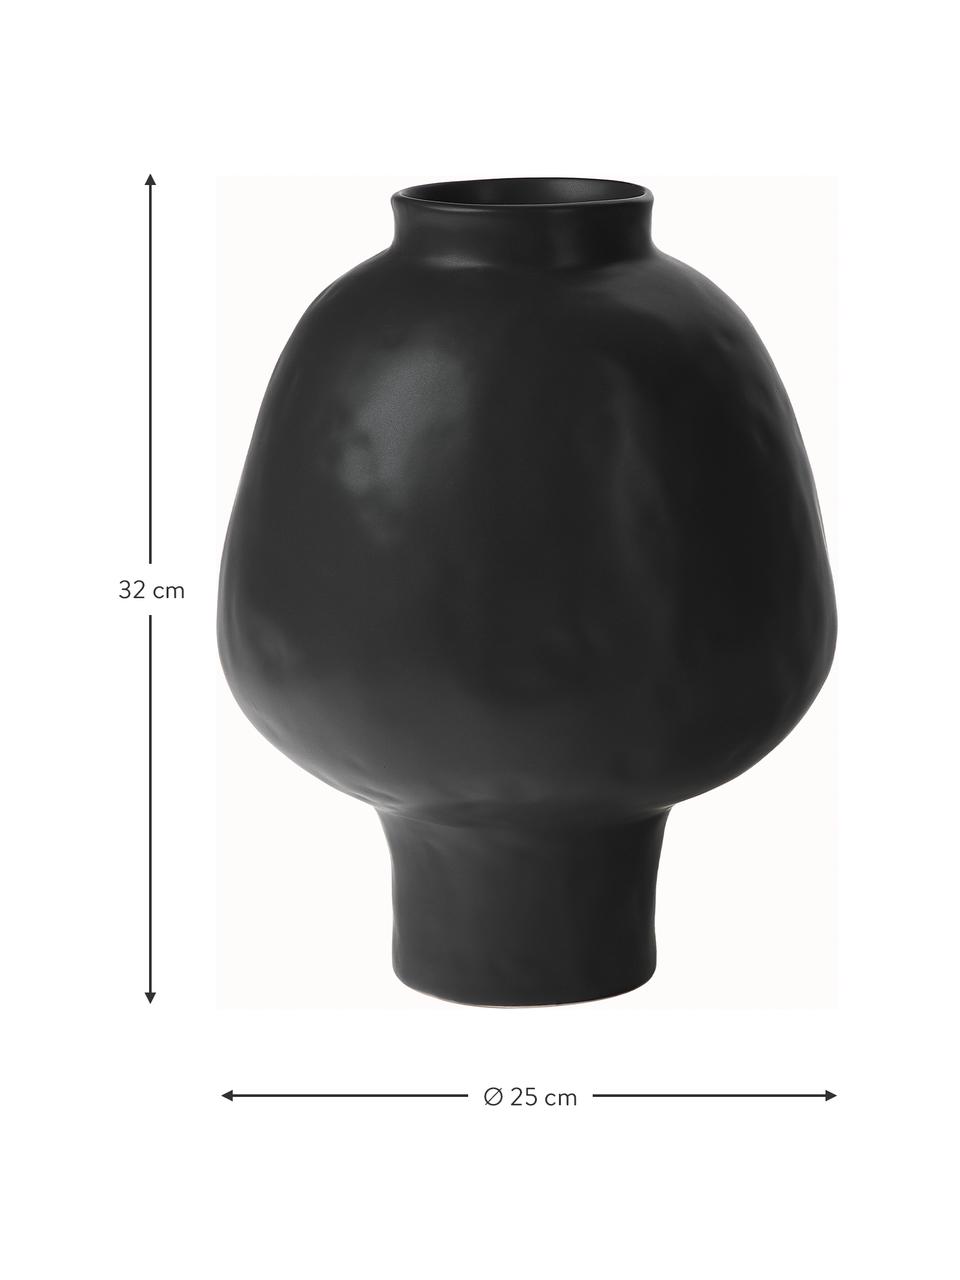 Handgefertigte Vase Saki aus Keramik in Schwarz, Keramik, Schwarz, Ø 25 x H 32 cm